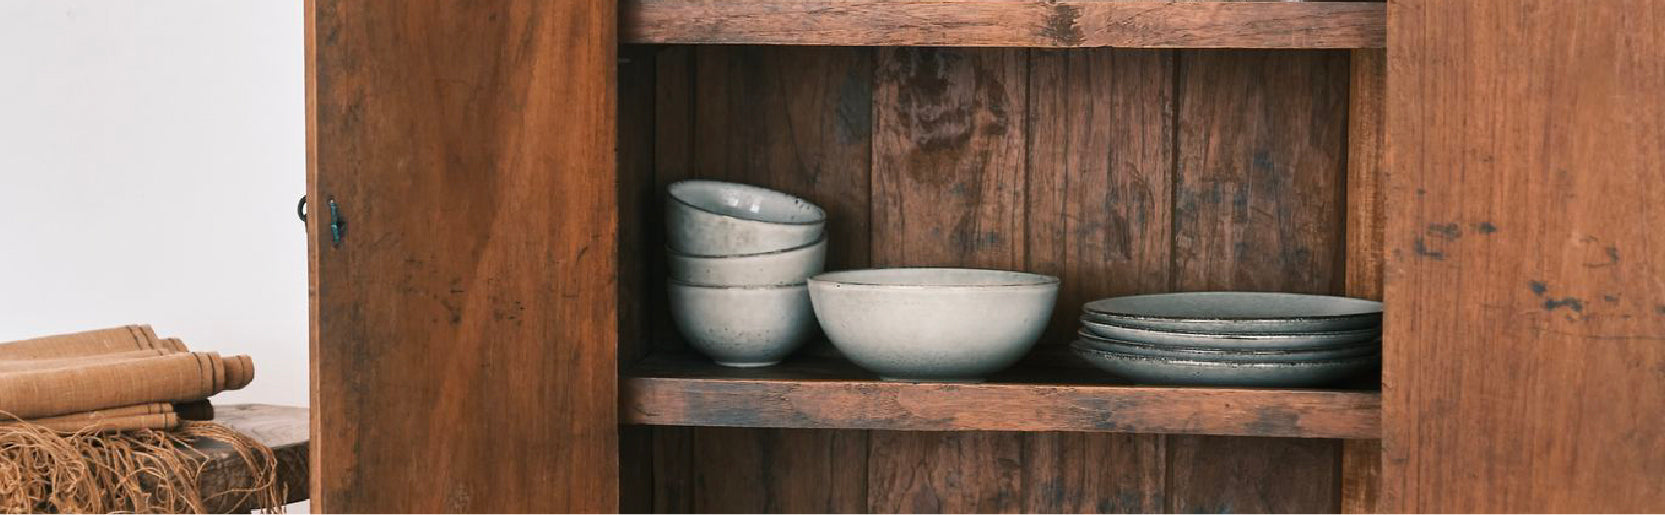 Antique - Homeware - Ceramic – Pithecanthropus Bali